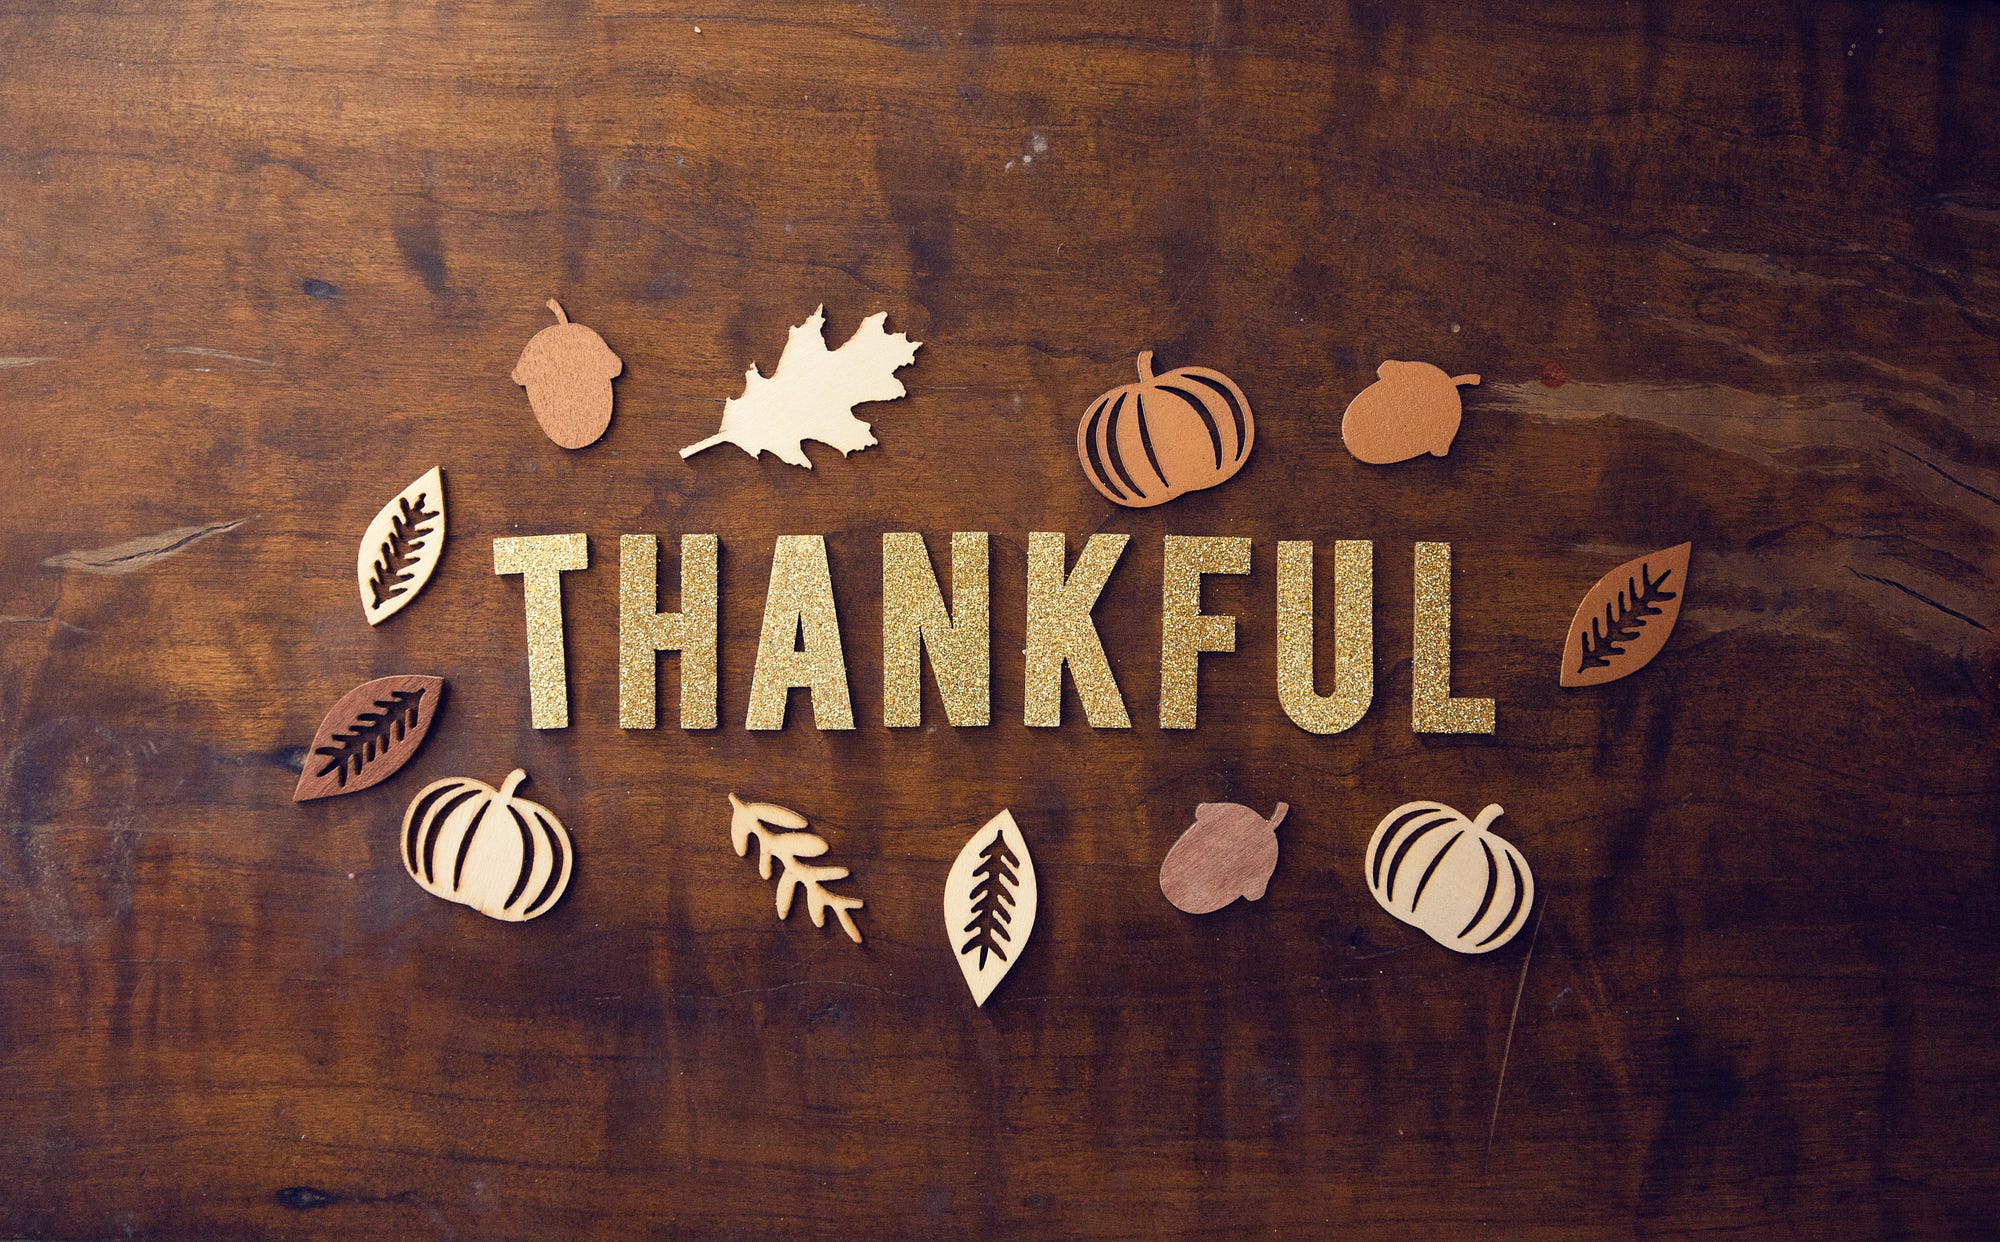 5 tradições americanas do Thanksgiving